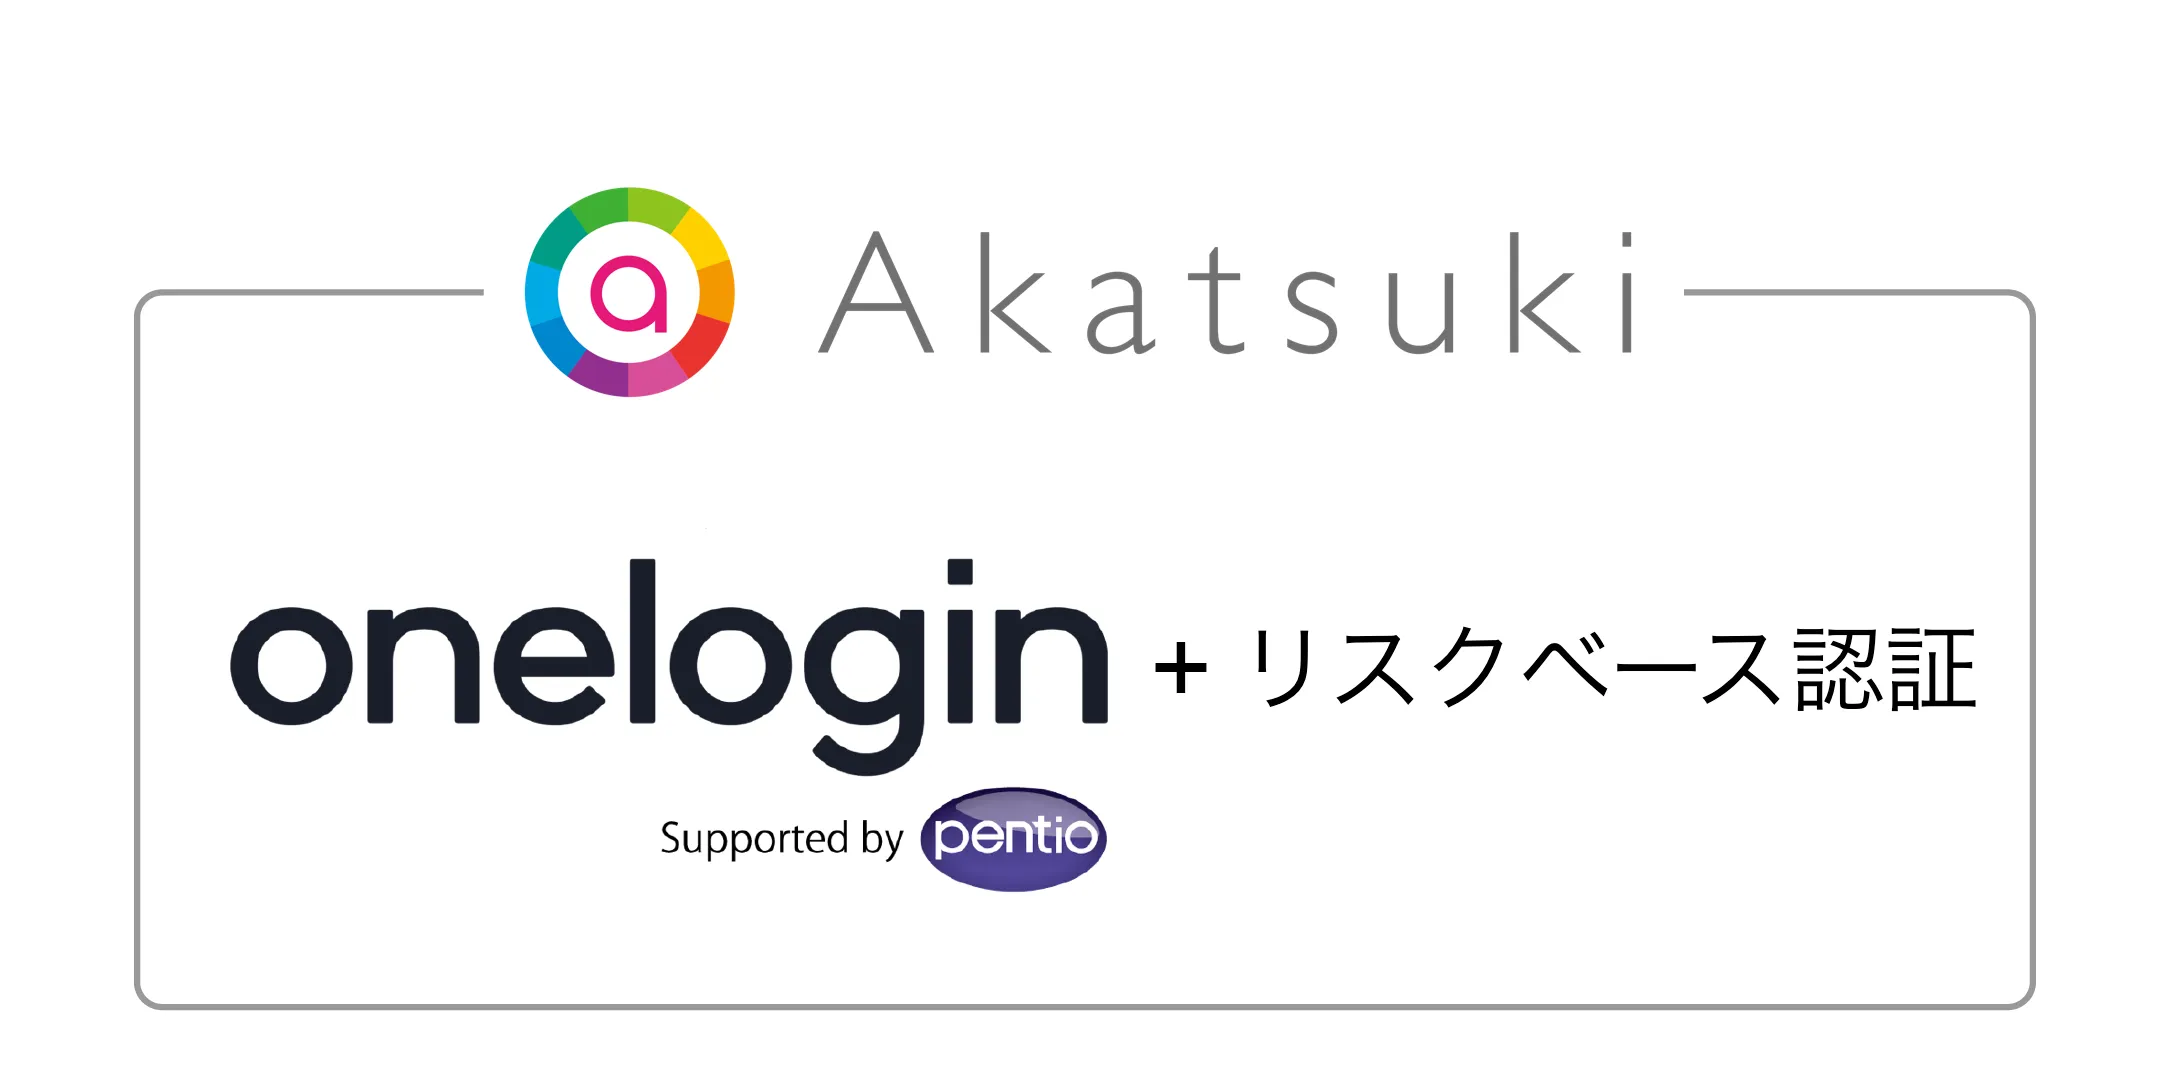 株式会社アカツキがOneLoginを採用